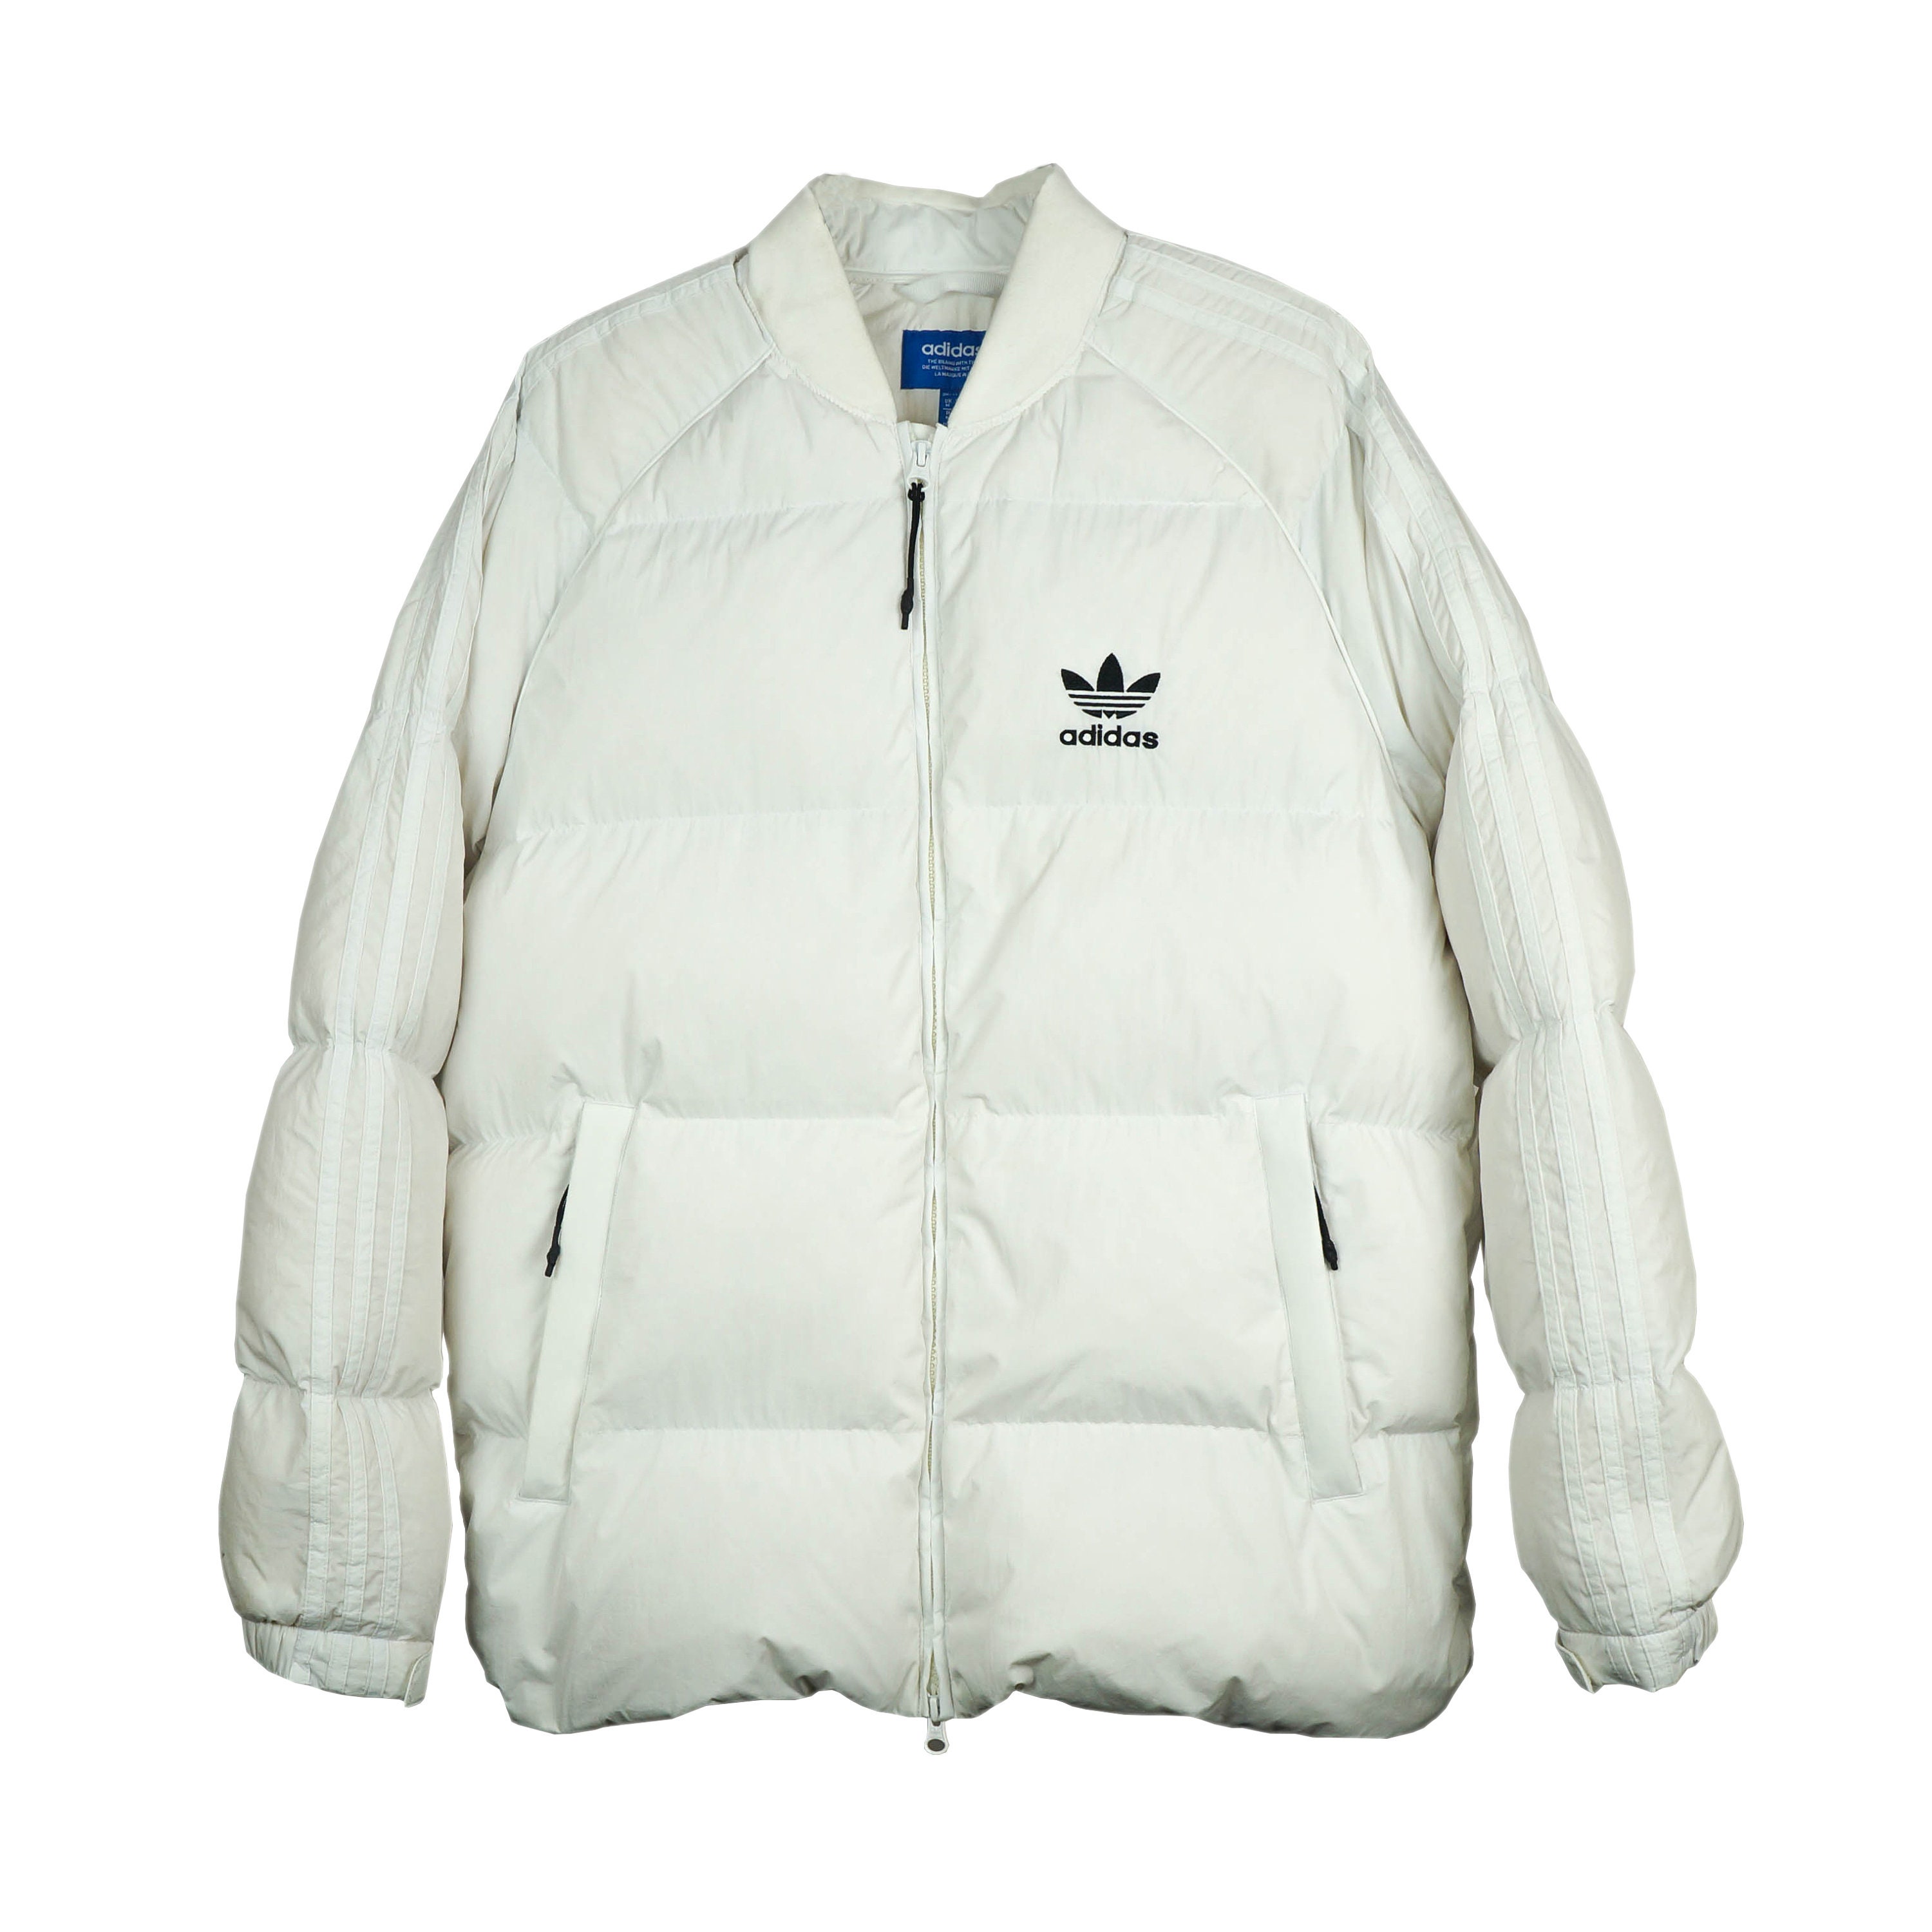 Afdaling in verlegenheid gebracht Praktisch Adidas Originals Vintage Puffer Jacket White - Etsy